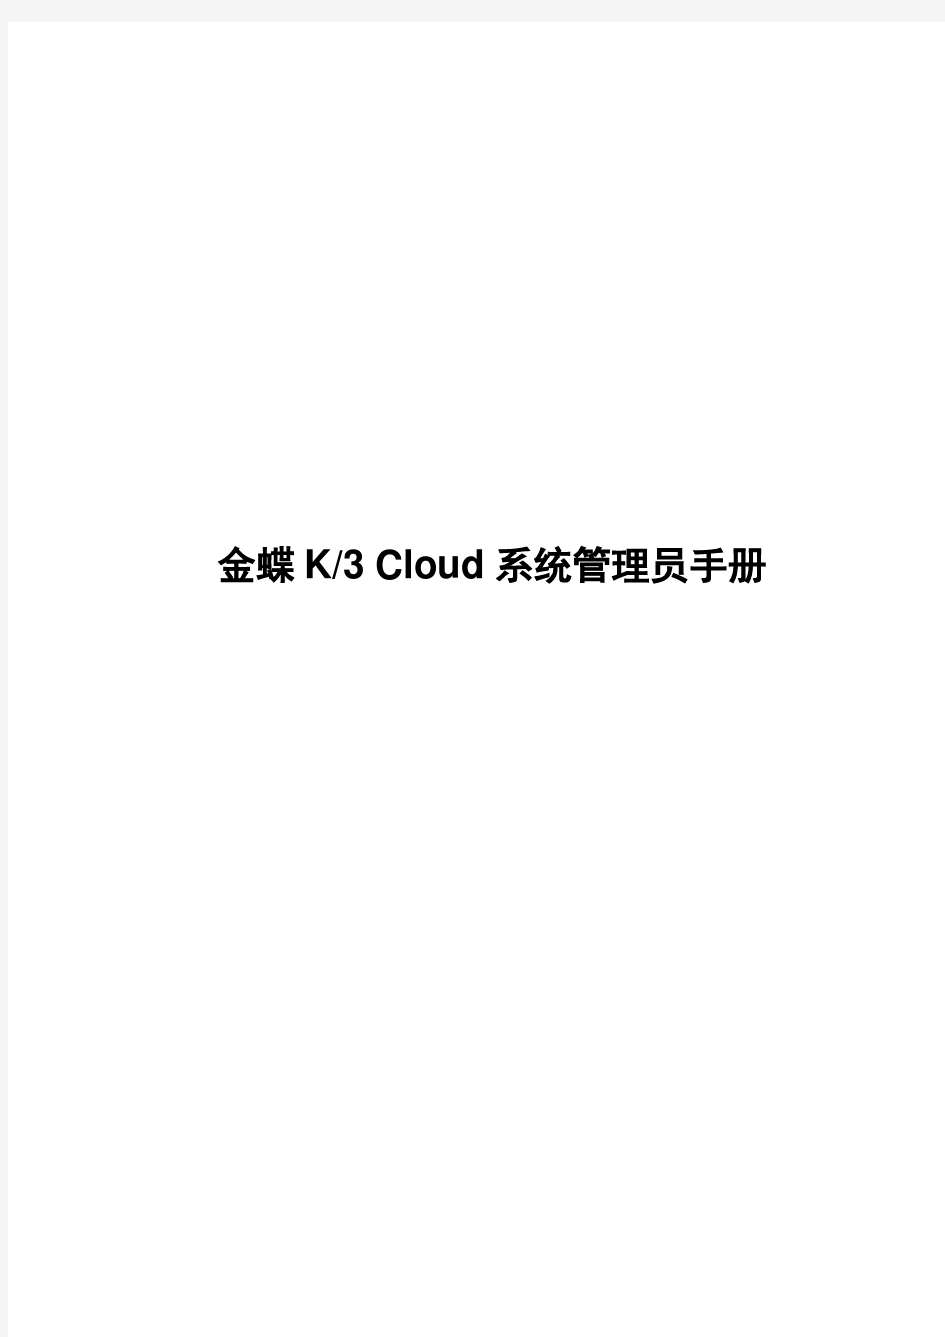 金蝶K3 Cloud 系统管理员手册